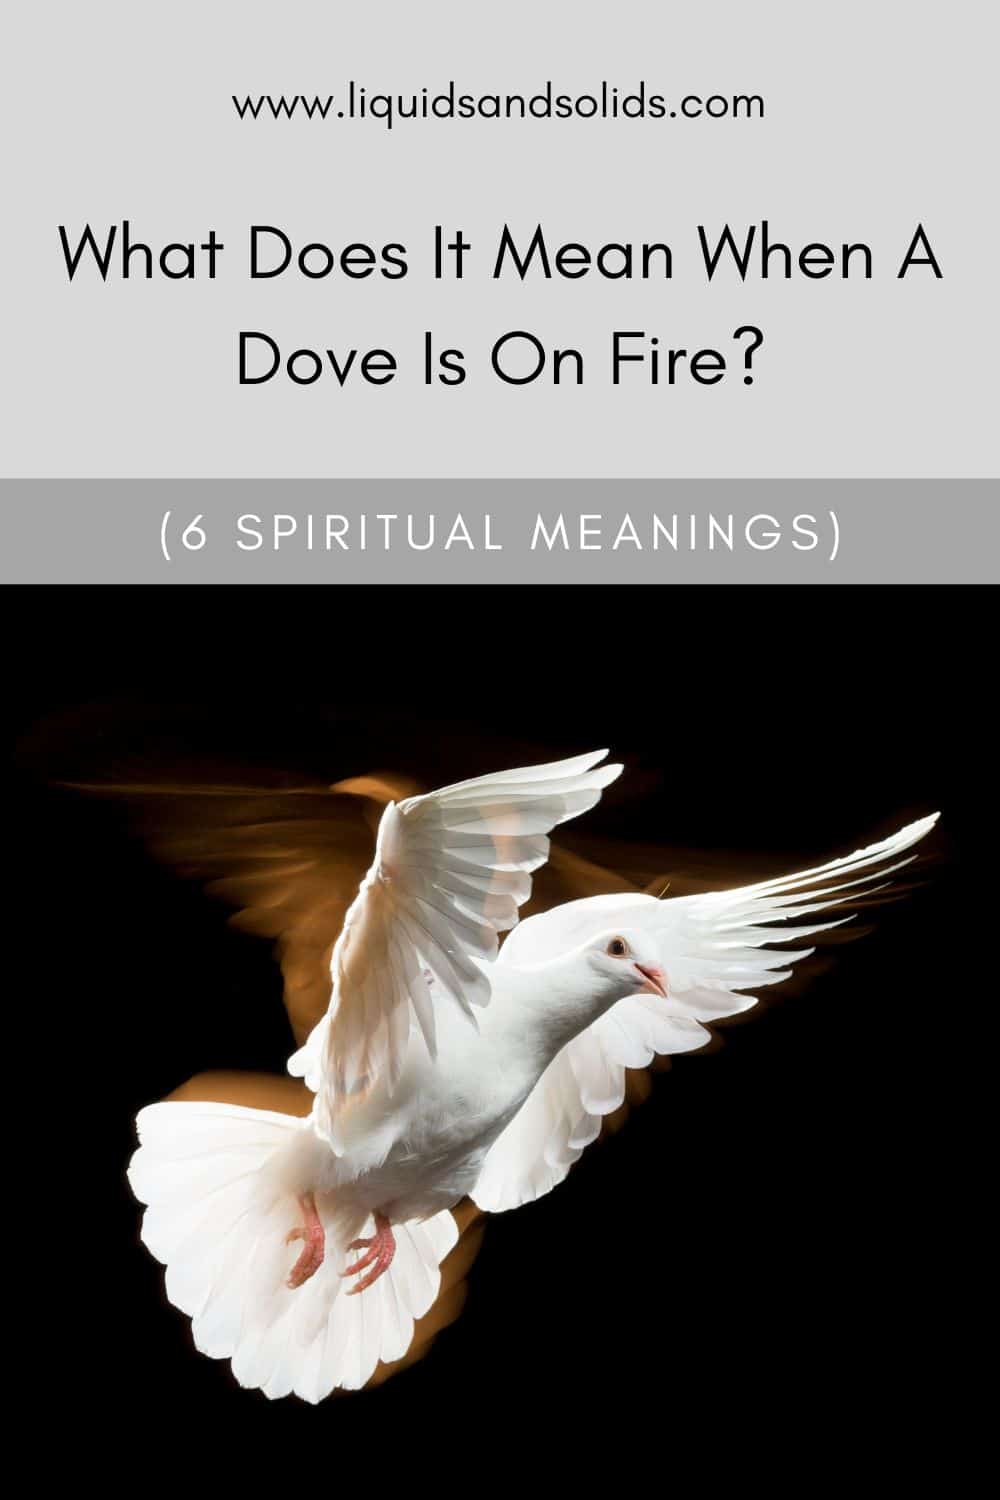  Ce que signifie une colombe en feu (6 significations spirituelles)